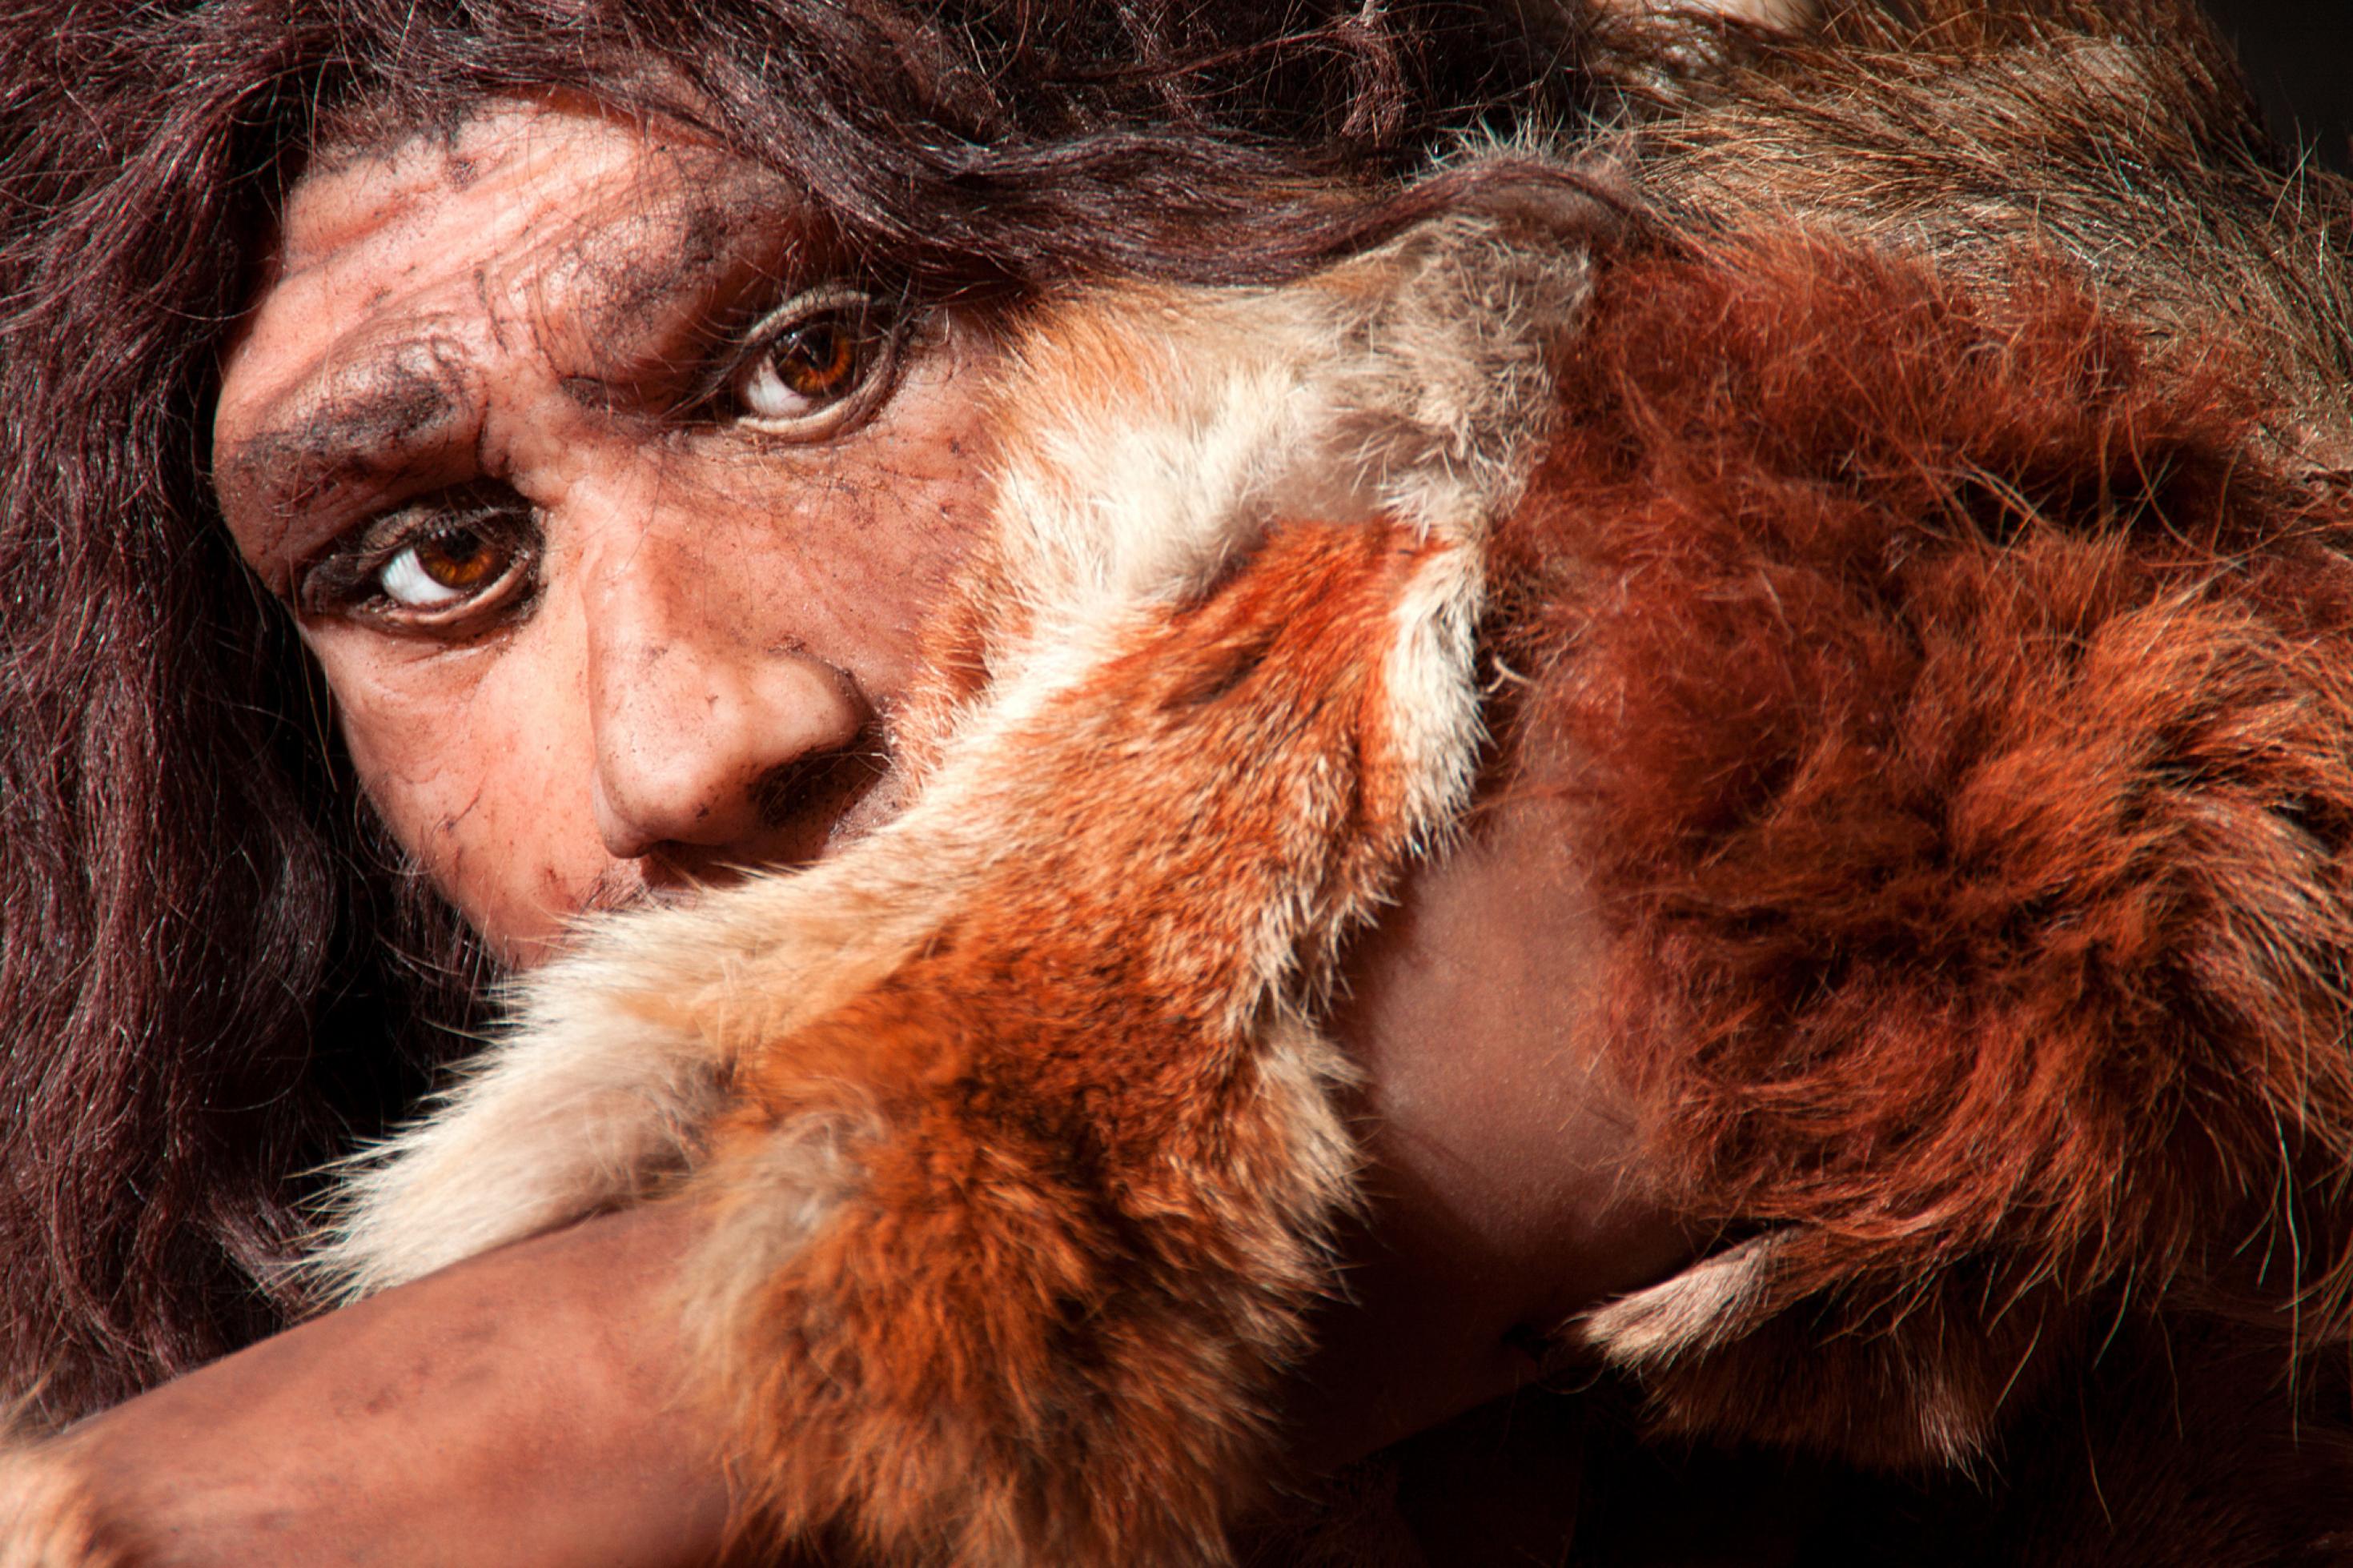 Das Bild zeigt die künstlerische Darstellung vom Gesicht eines Neandertalers mit braunen Augen und dichten, dunklen Haaren. Sein Arm ist zum Teil von einem flauschigen, weiß-braunen, auf der Schulter ruhenden Fell bedeckt. Er hält ihn schräg vor sich, so dass seine Mundpartie verdeckt ist – als ob er sich vor etwas schützen wolle. Vor vermutlich 60.000 Jahren haben sich Homo sapiens-Leute mit Neandertalern vermischt. Einige vom Neandertaler übernommene Gene halfen bei der Anpassung und beeinflussen bis heute unser Aussehen und unsere Anfälligkeit für manche Krankheiten.